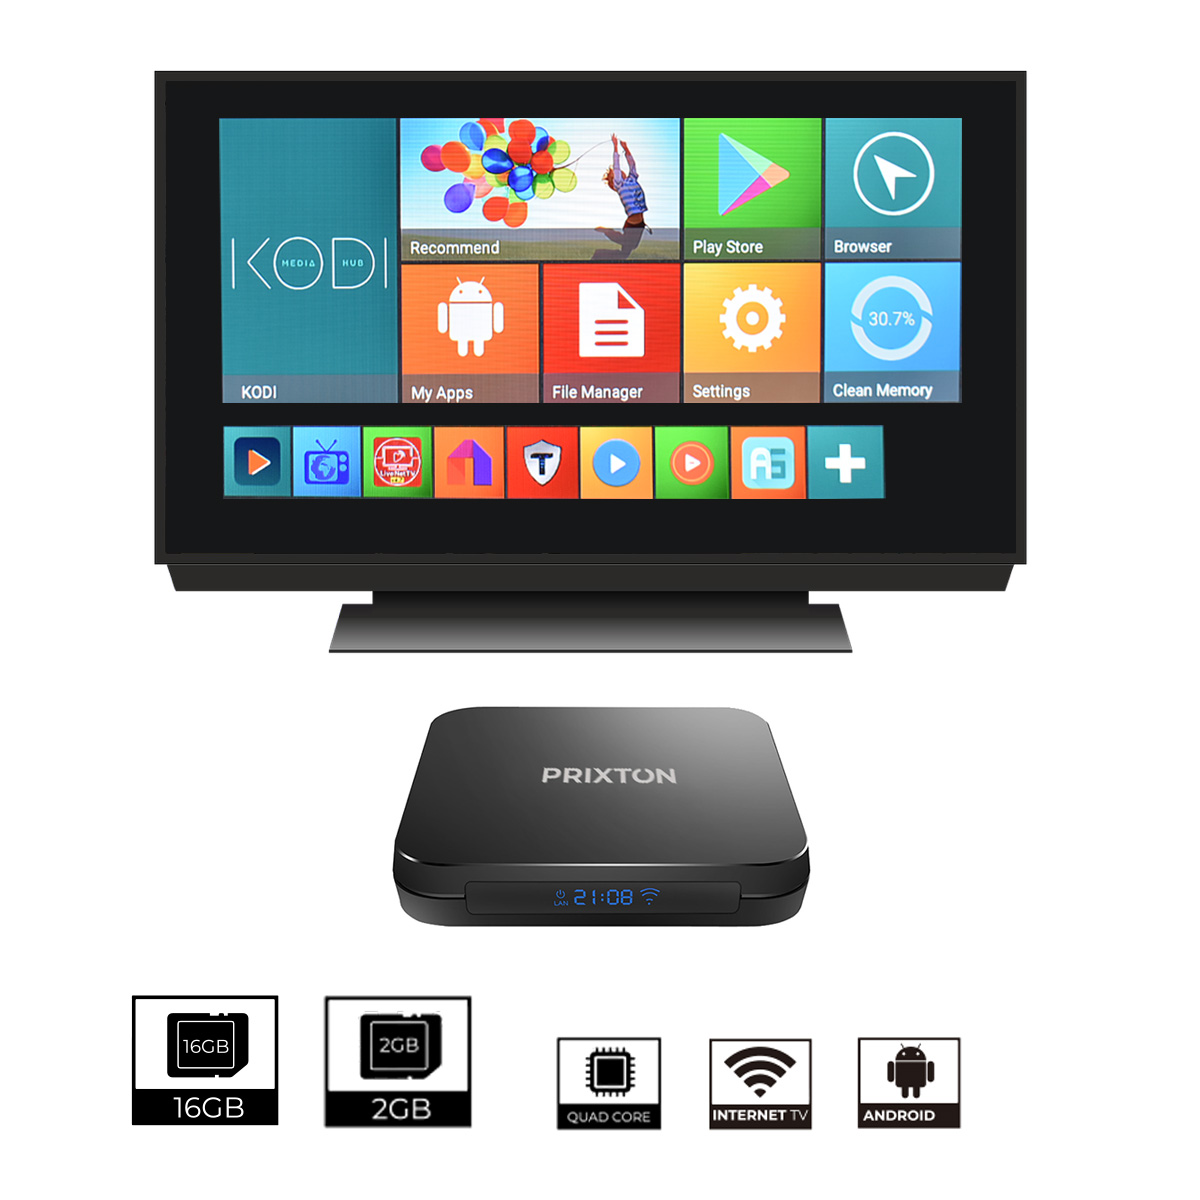 PRIXTON SMART TV BOX 10005176 PRIXTON - oferta: 44,83